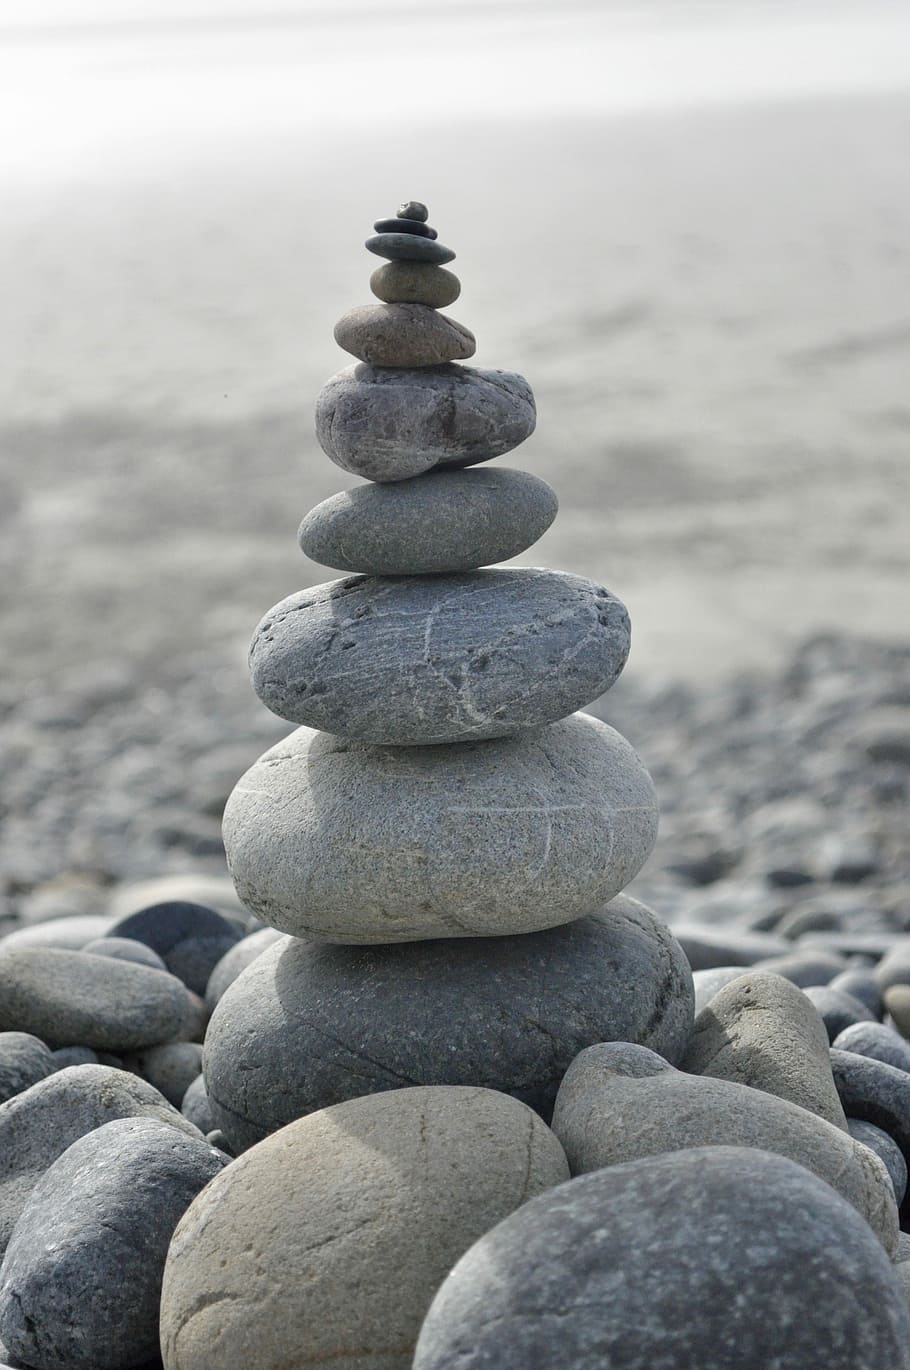 pila de guijarros, zen, estabilidad, equilibrio, adoquines, armonía, meditación, roca, piedra, orden